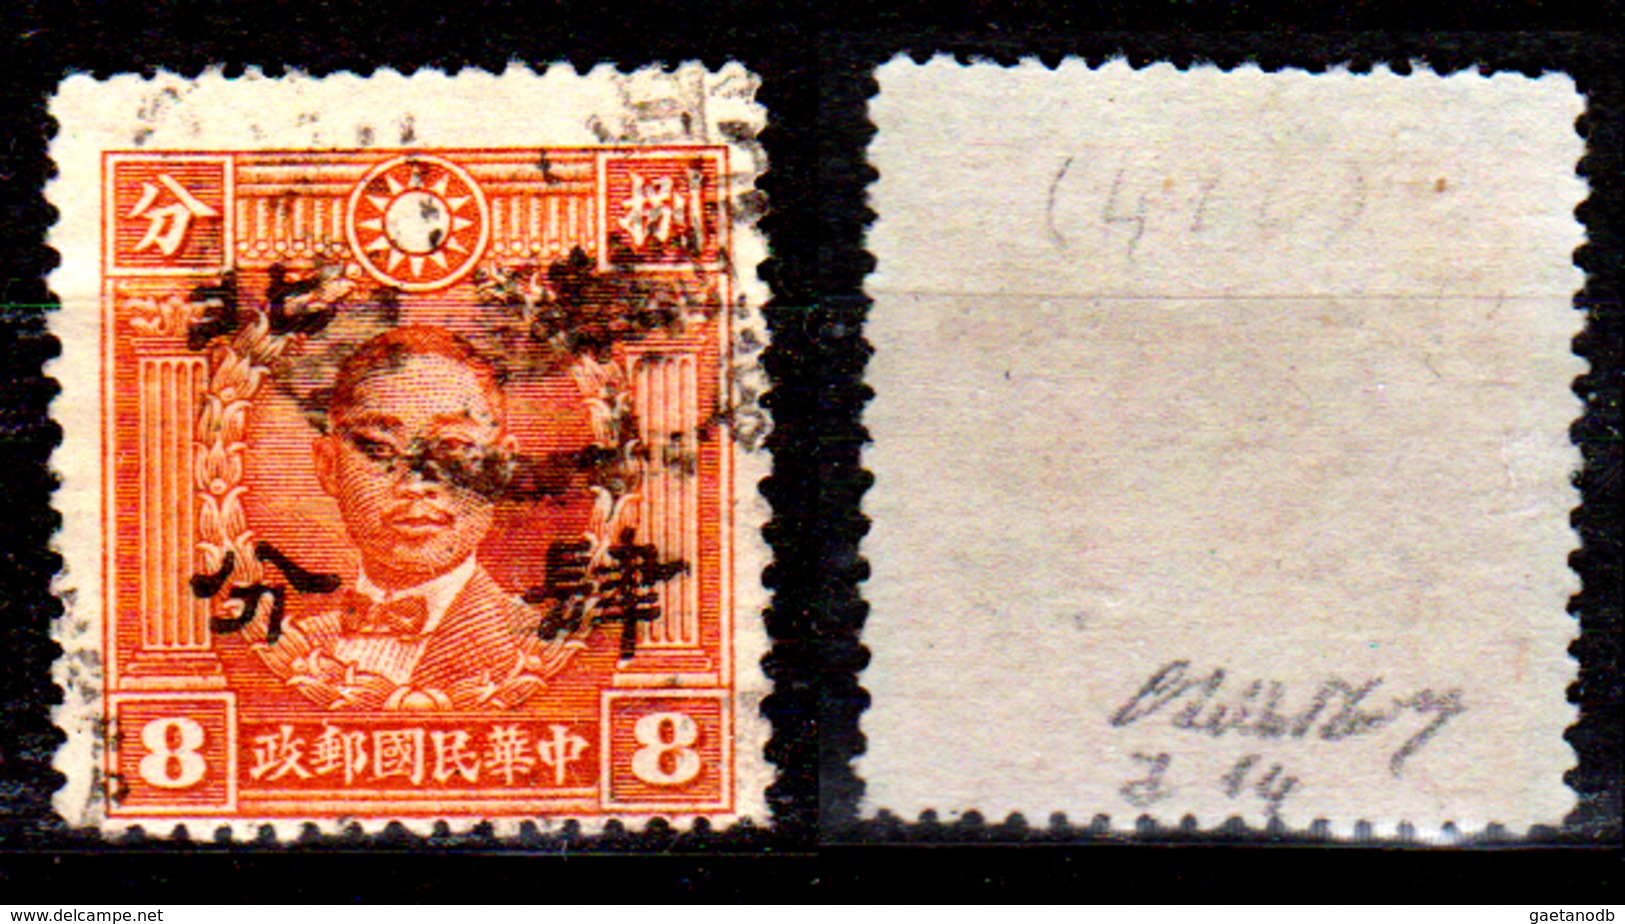 Cina-F-578 - Soprastampa "Hwa Pei" (Cina Del Nord) 1942 - Michel N. 292 - Senza Difetti Occulti. - 1941-45 China Dela Norte